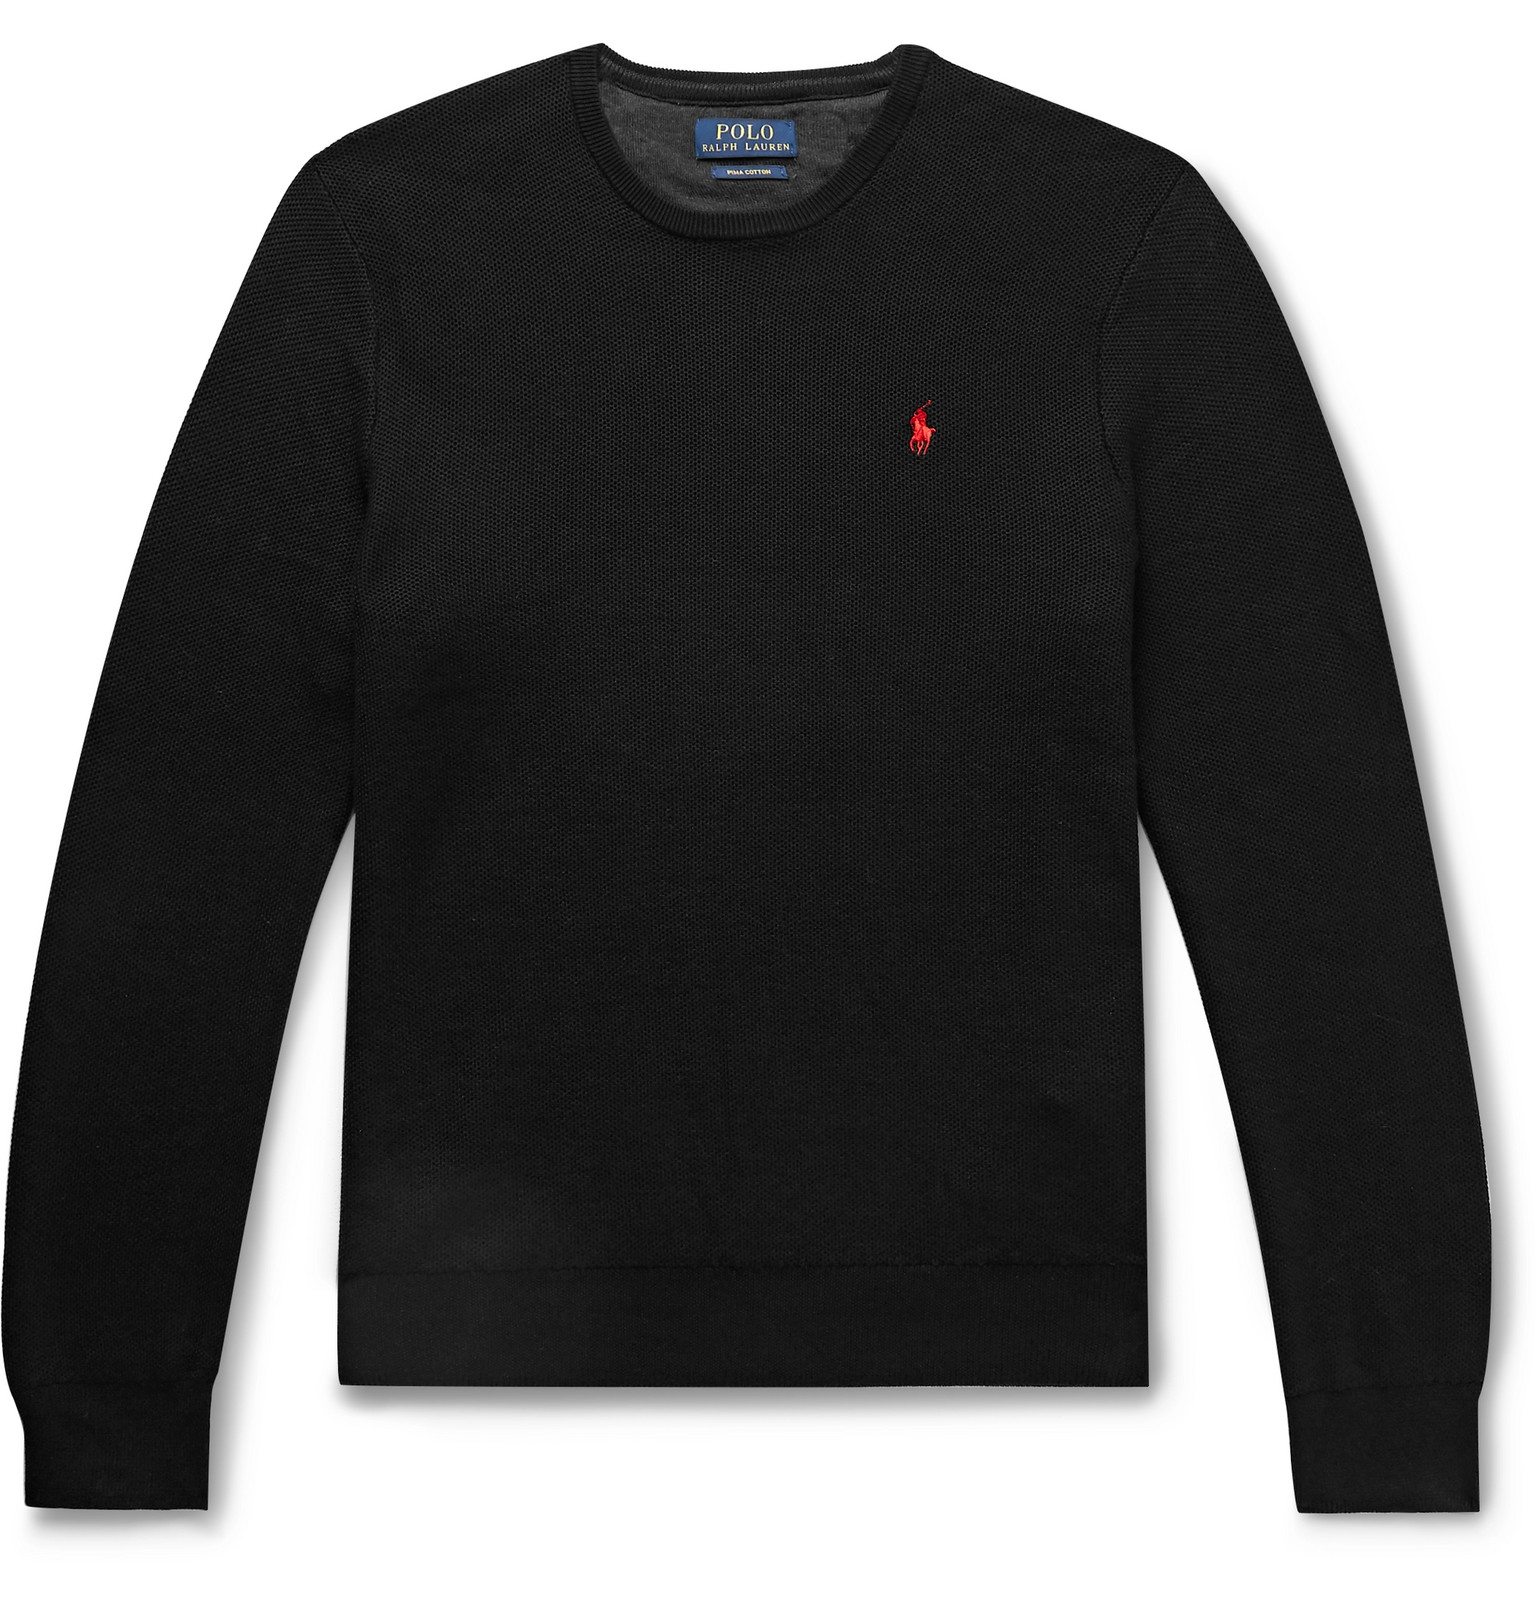 polo ralph lauren sweatshirt black